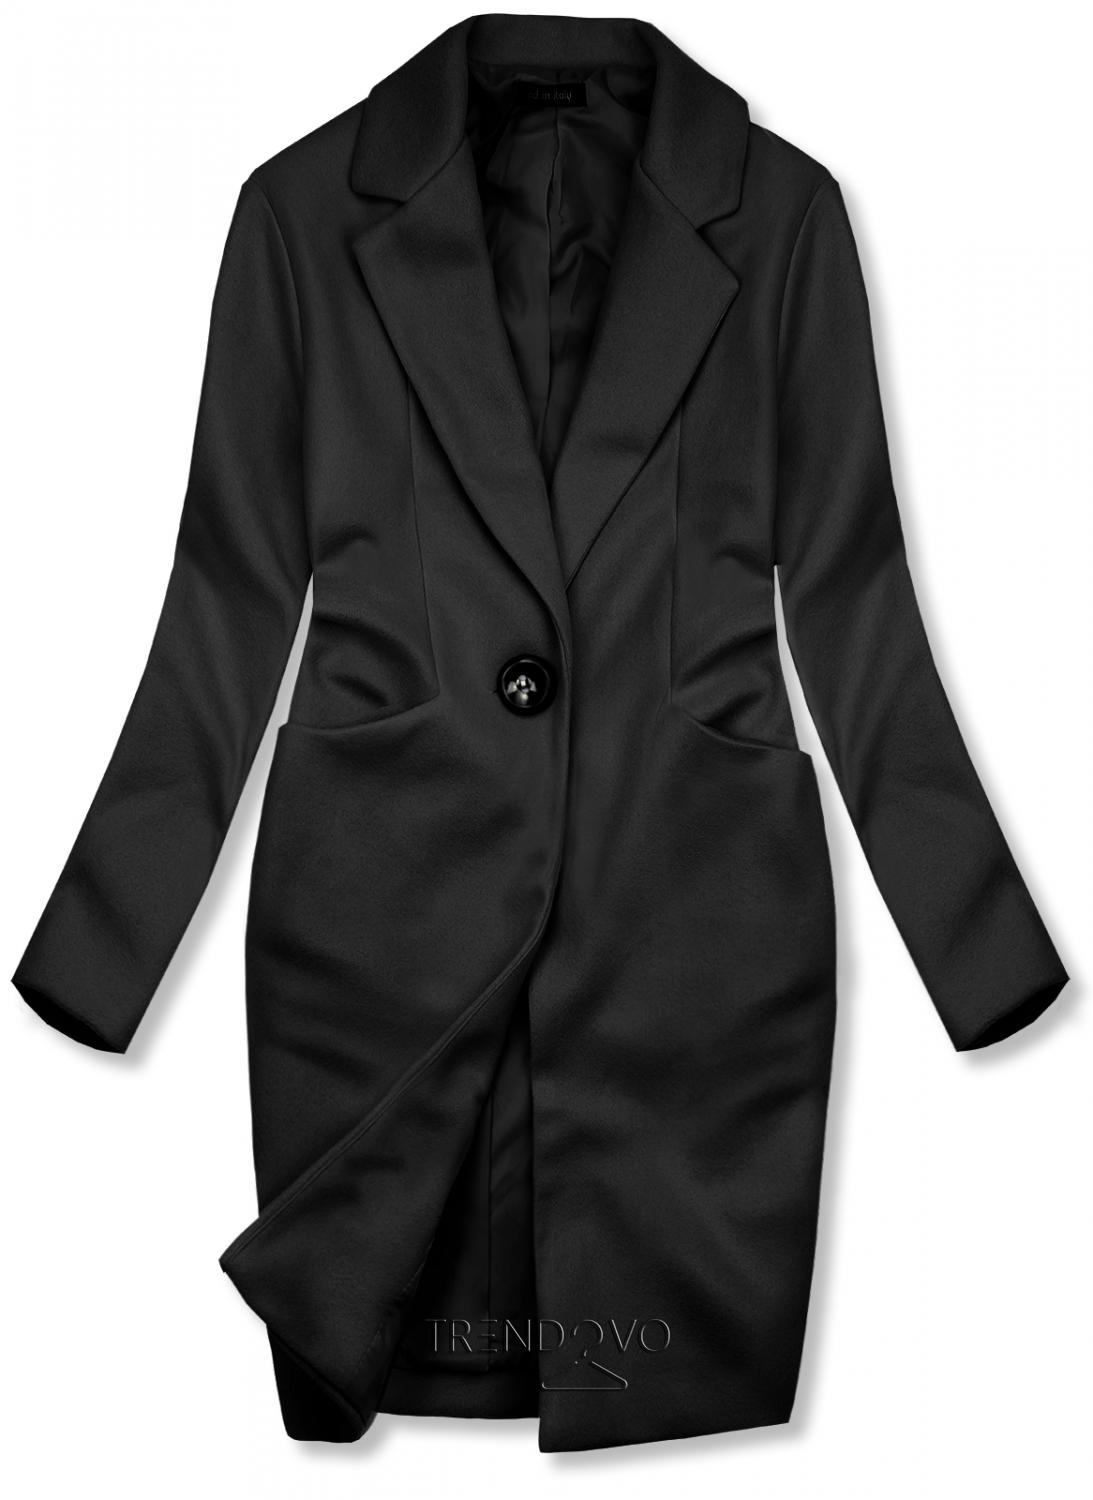 Černý jarní kabát se zapínáním na knoflík